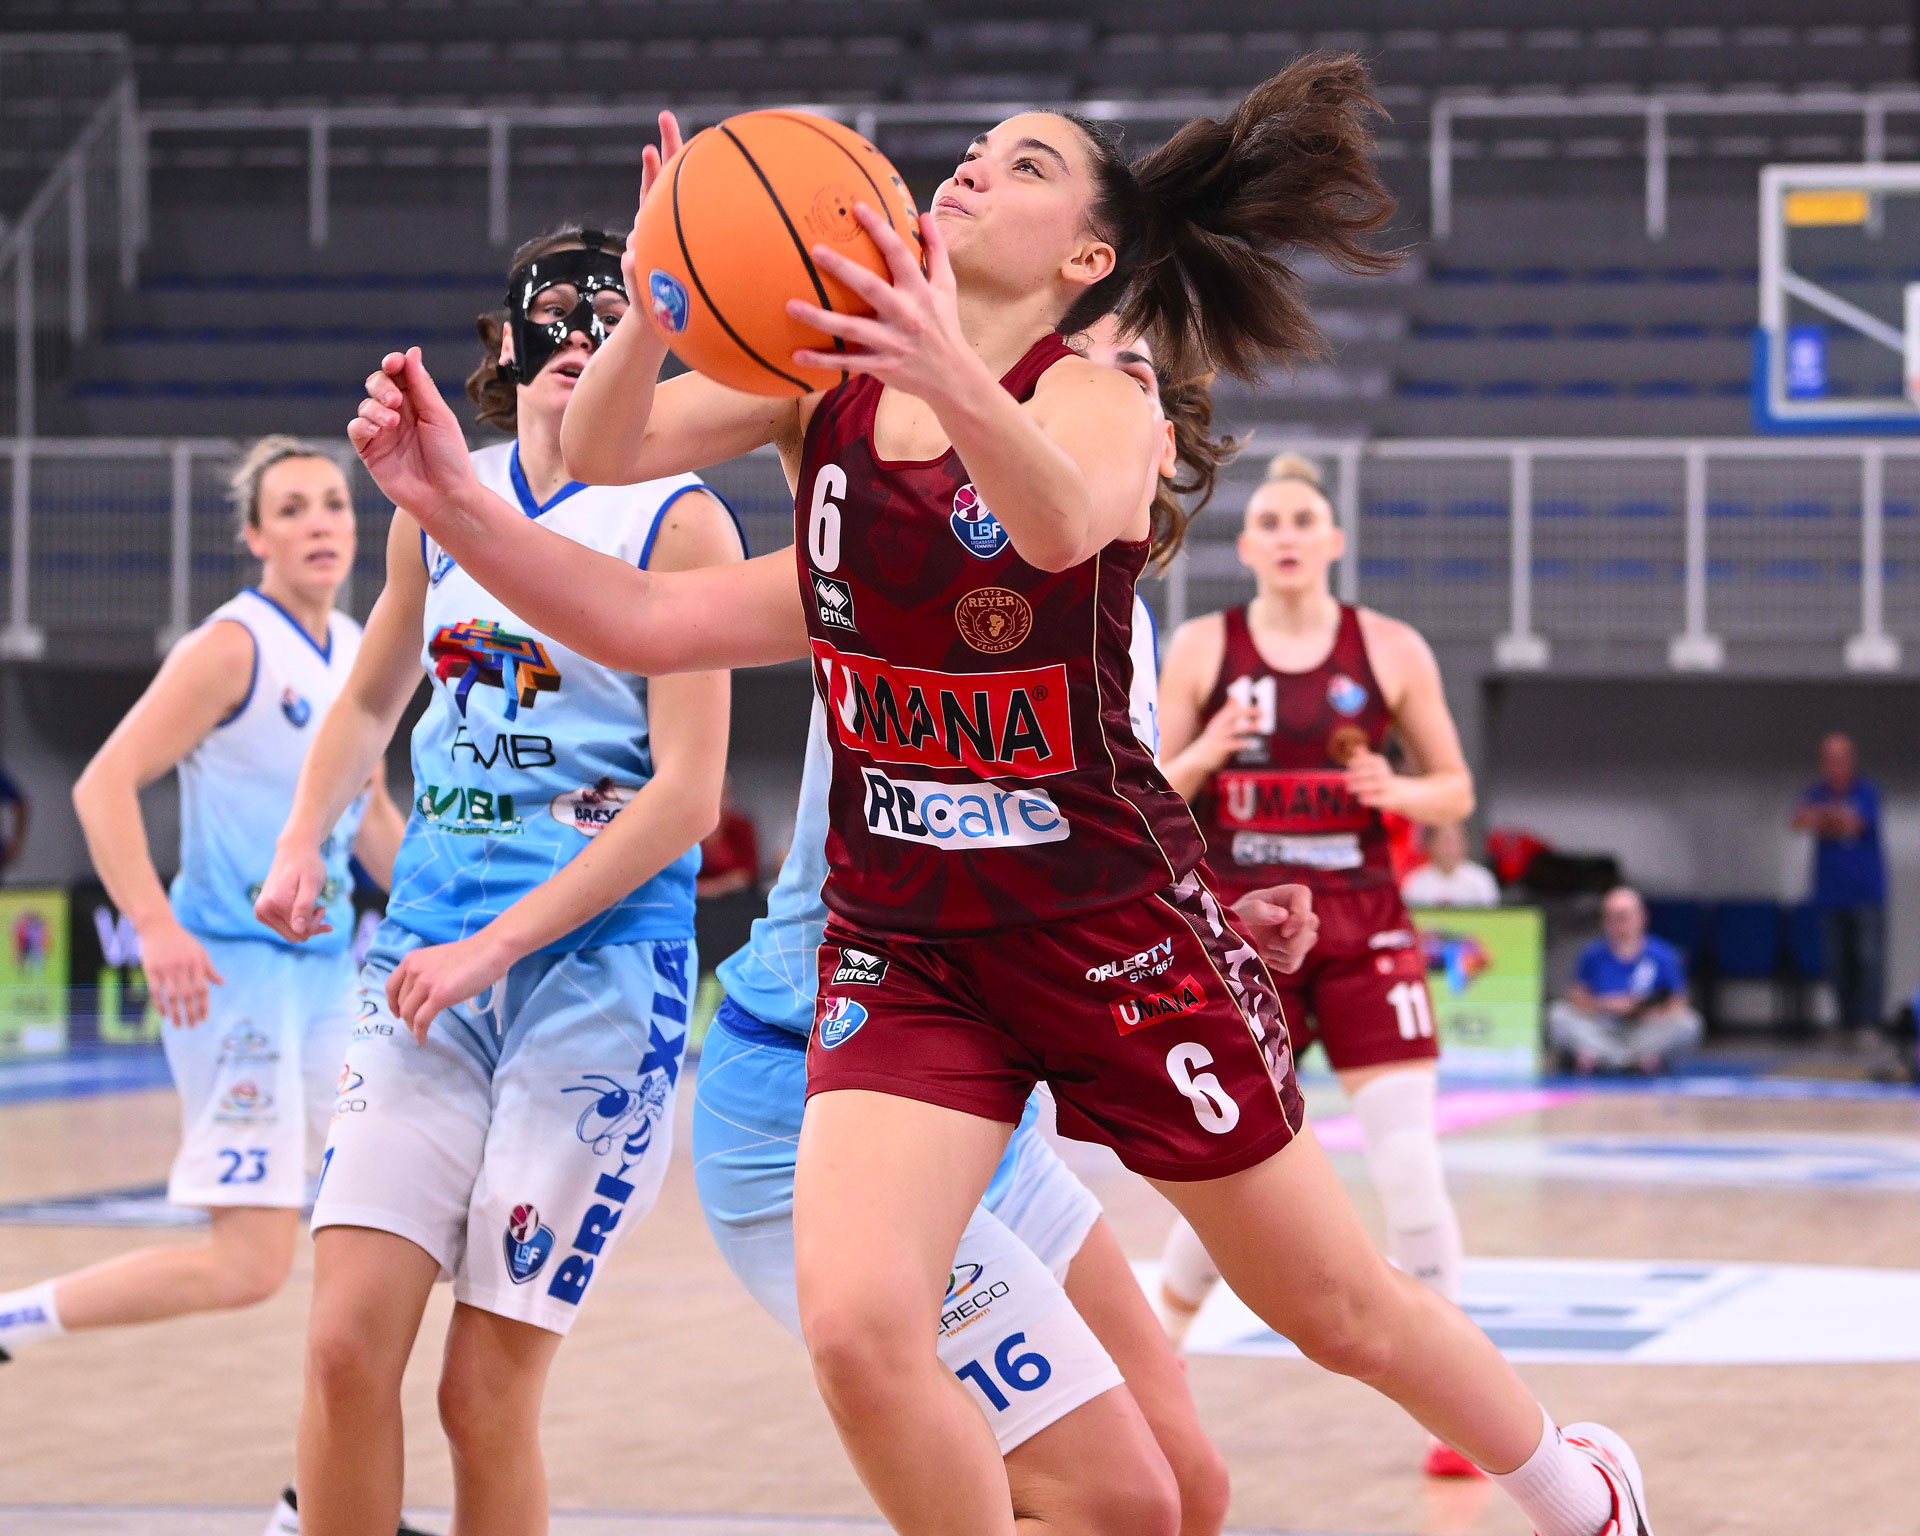 RMB Brixia Basket-Umana Reyer: 49-87